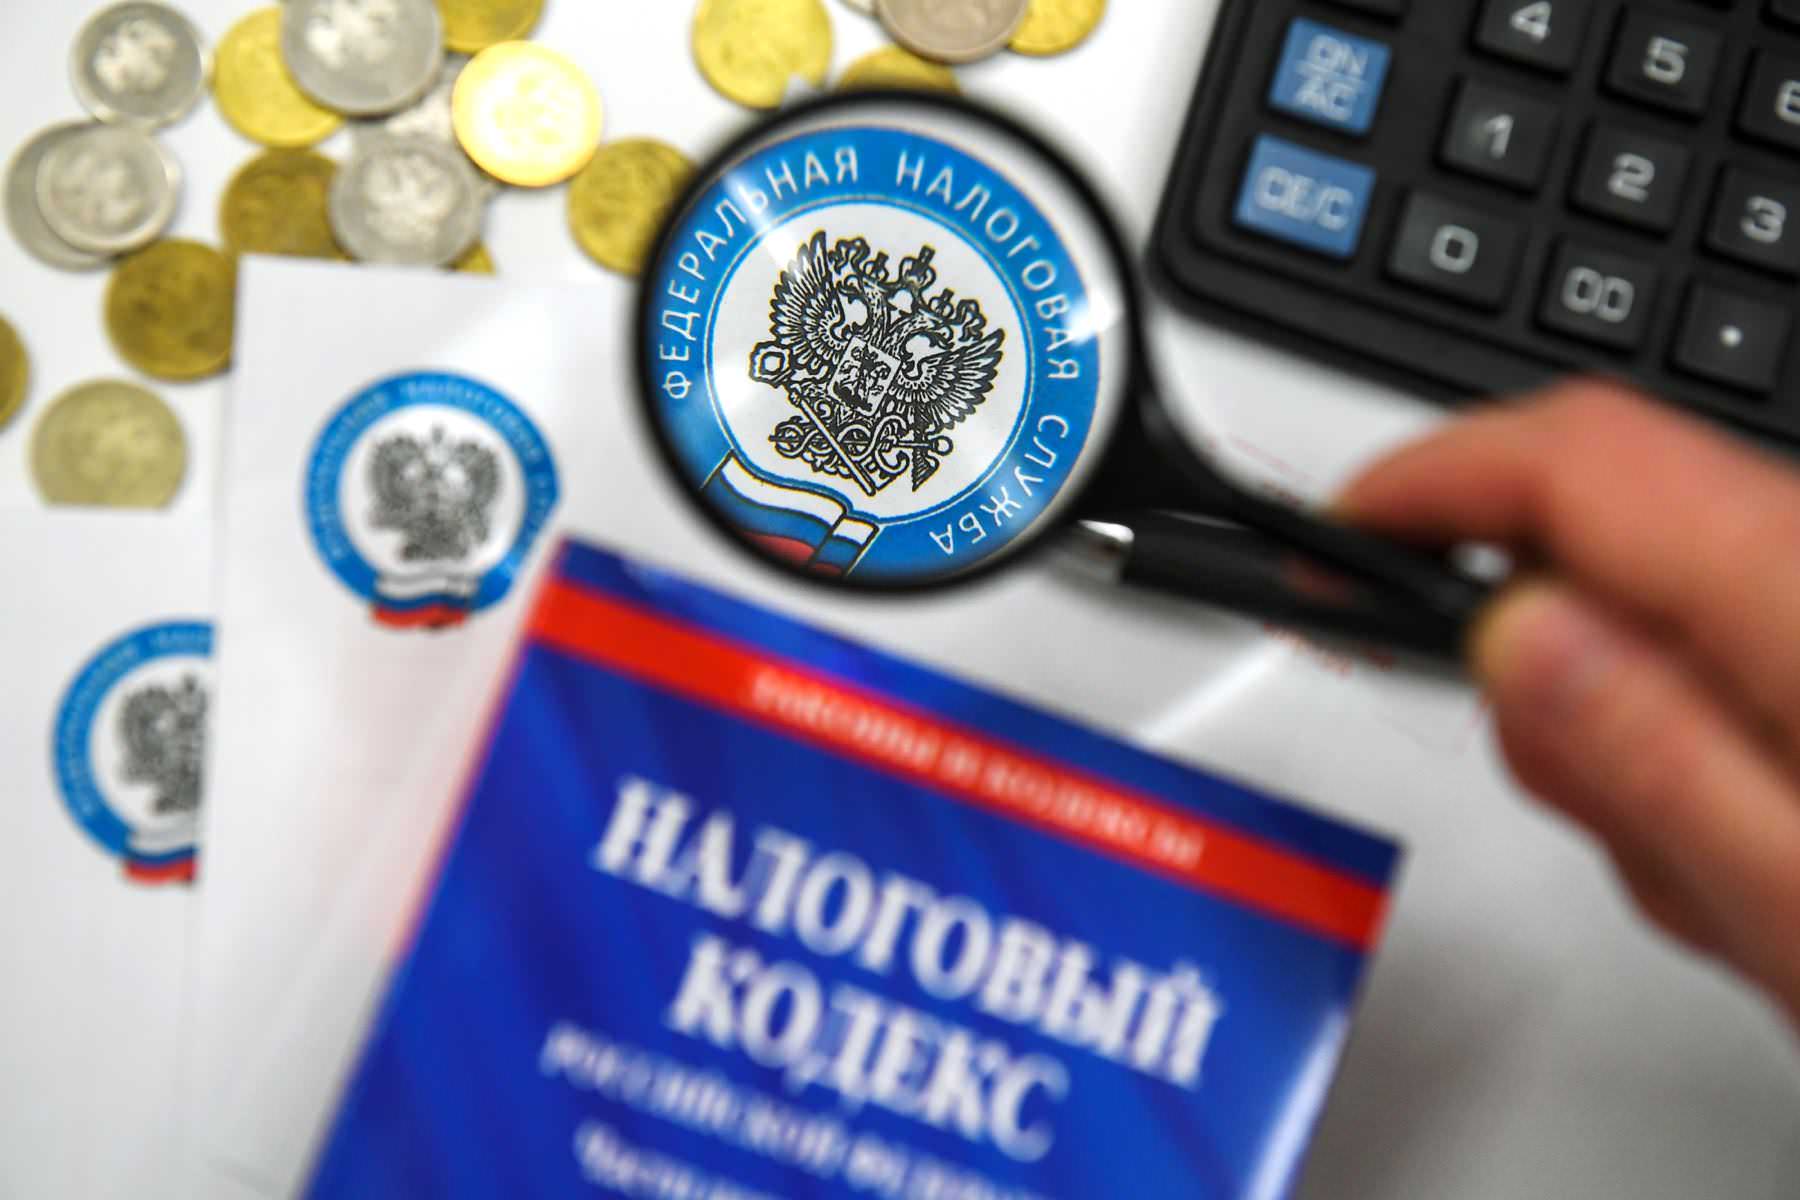 Белгородские организации и индивидуальные предприниматели смогут оплачивать налоги, сборы и взносы единым платежом.